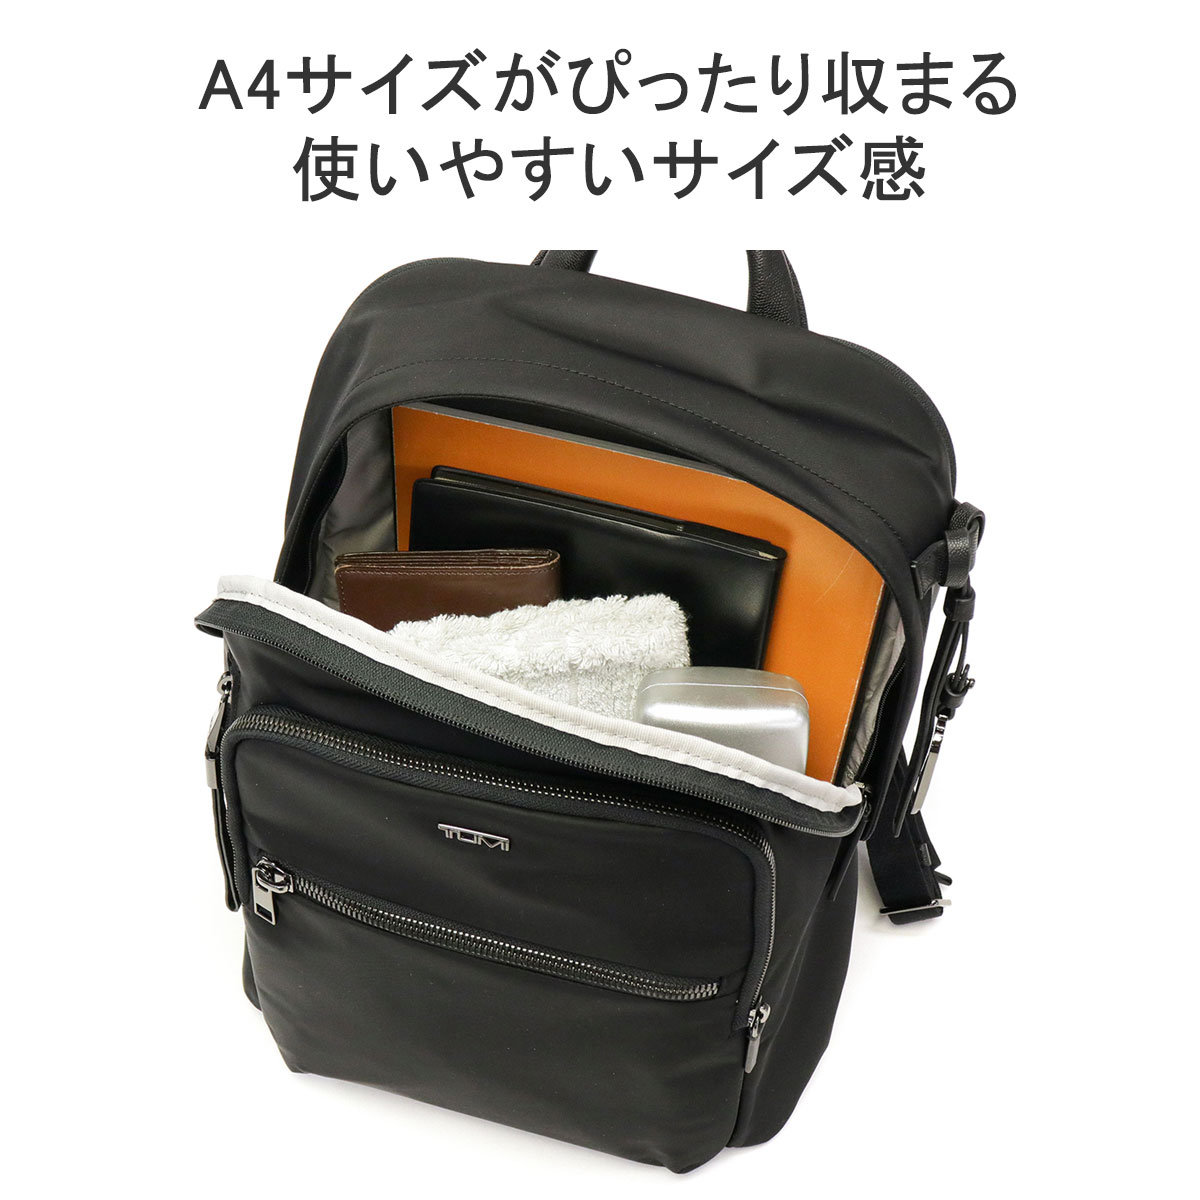  стандартный товар 5 год гарантия Tumi рюкзак TUMI Voyageur [ отверстие ji-] рюкзак Day Pack портфель PC место хранения мужской женский 0196601